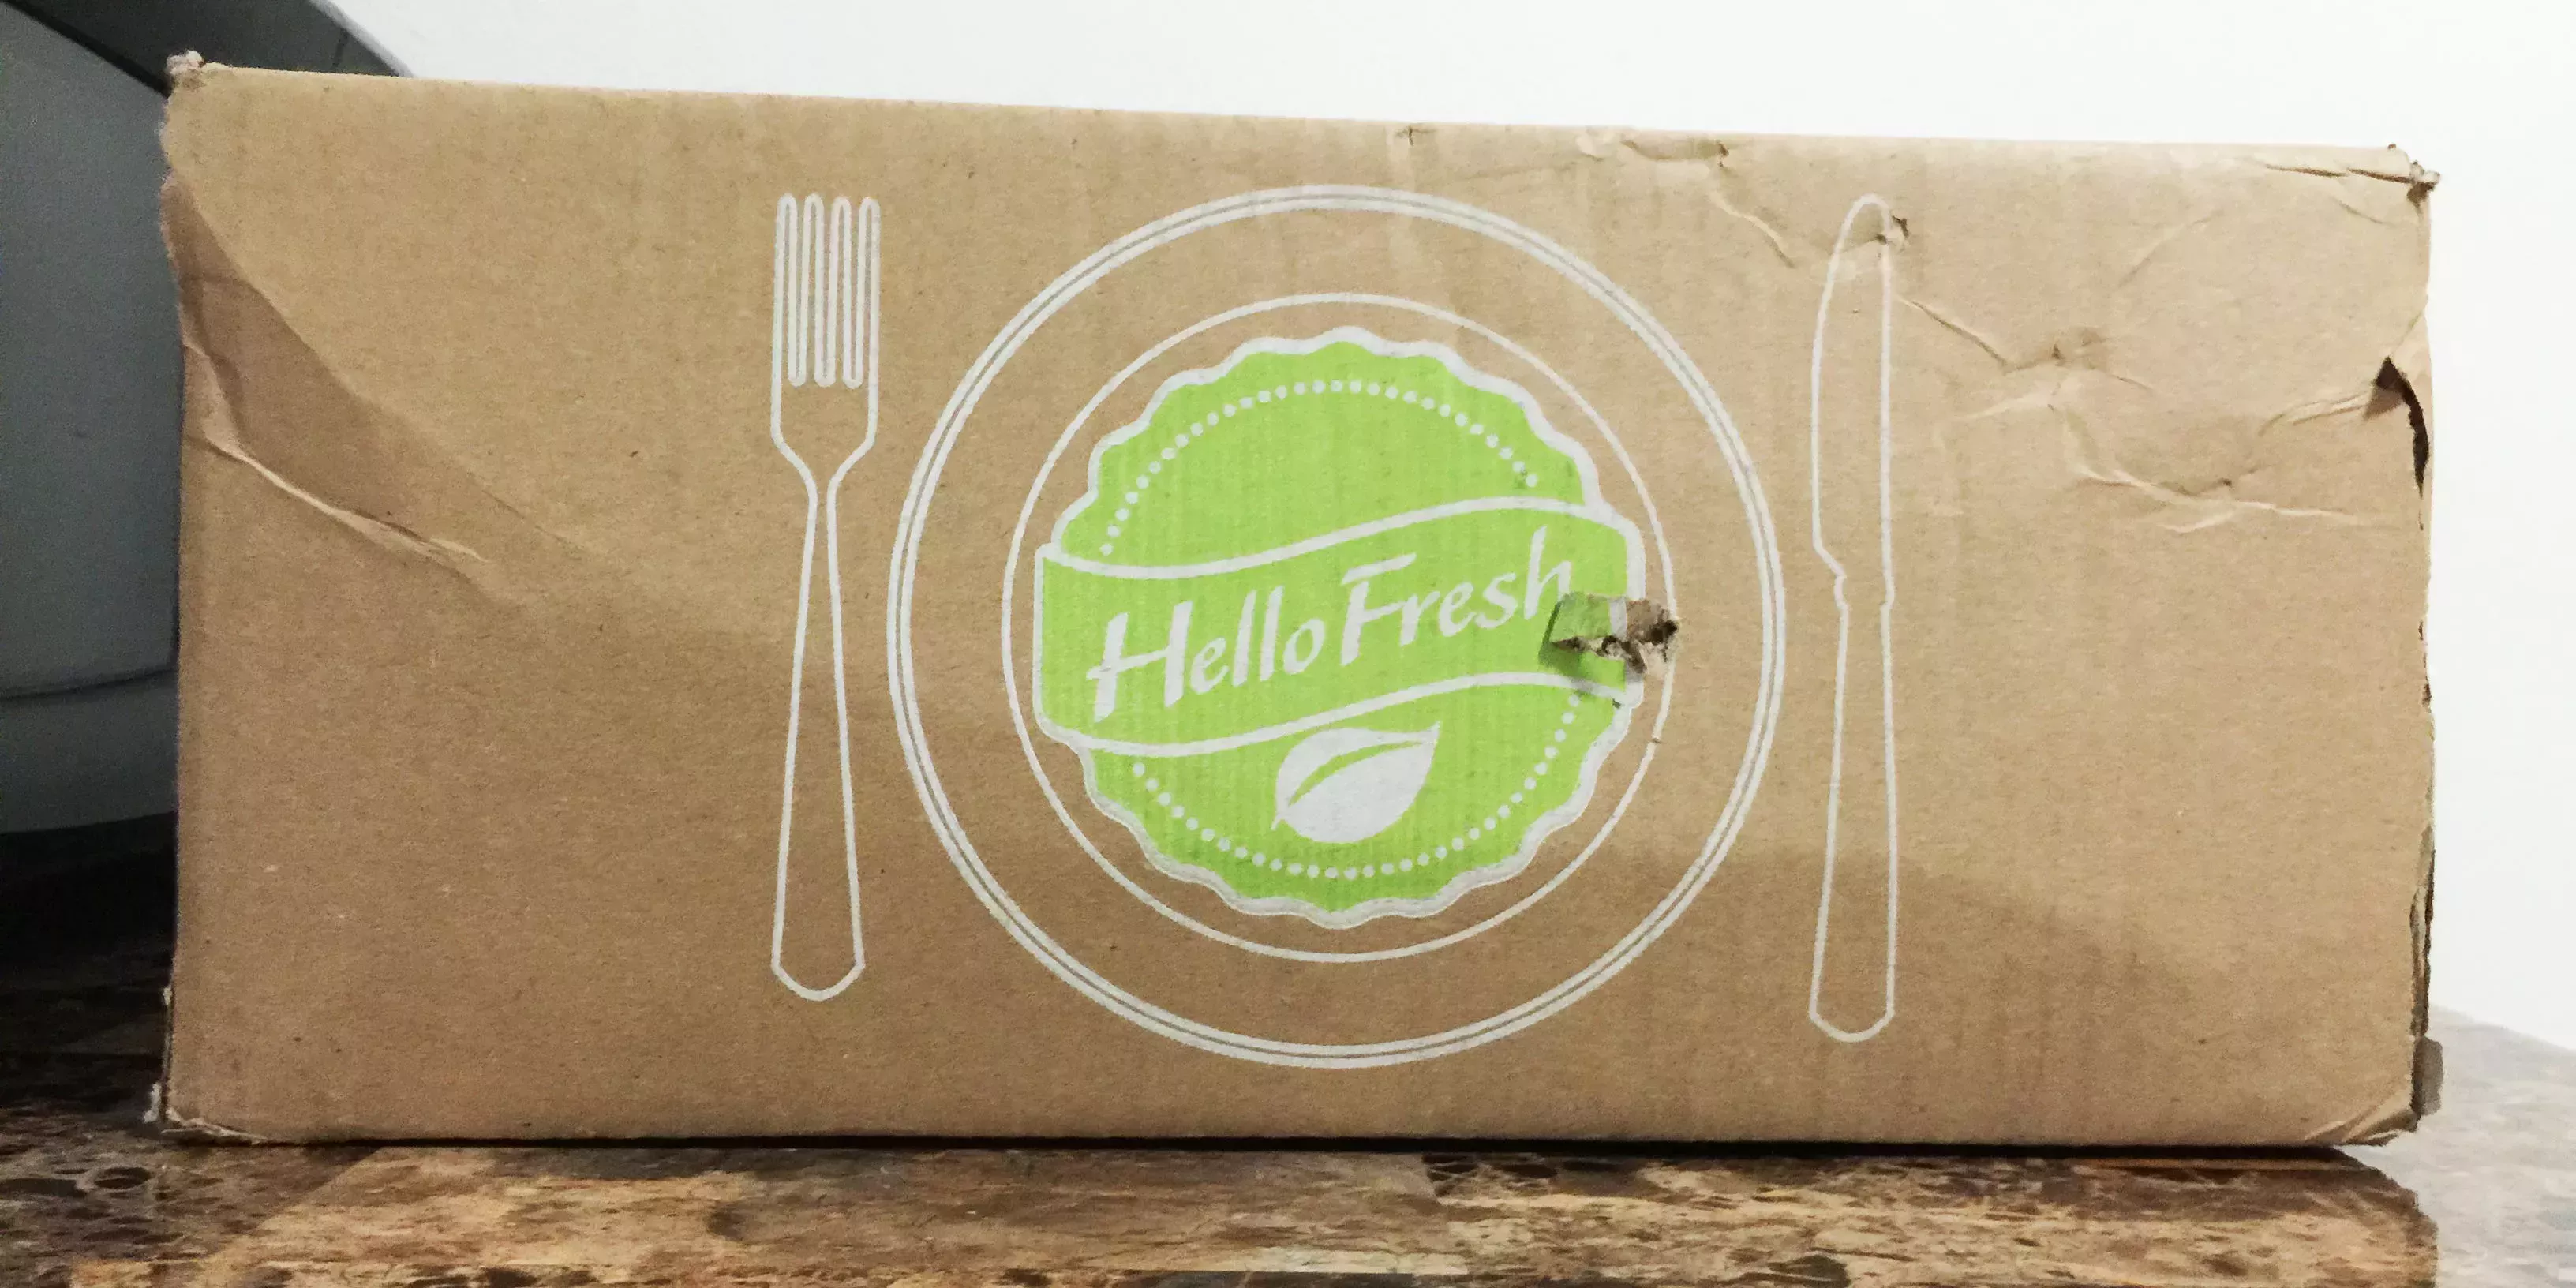 6 personas hospitalizadas por E. coli relacionada con los kits de comida de HelloFresh